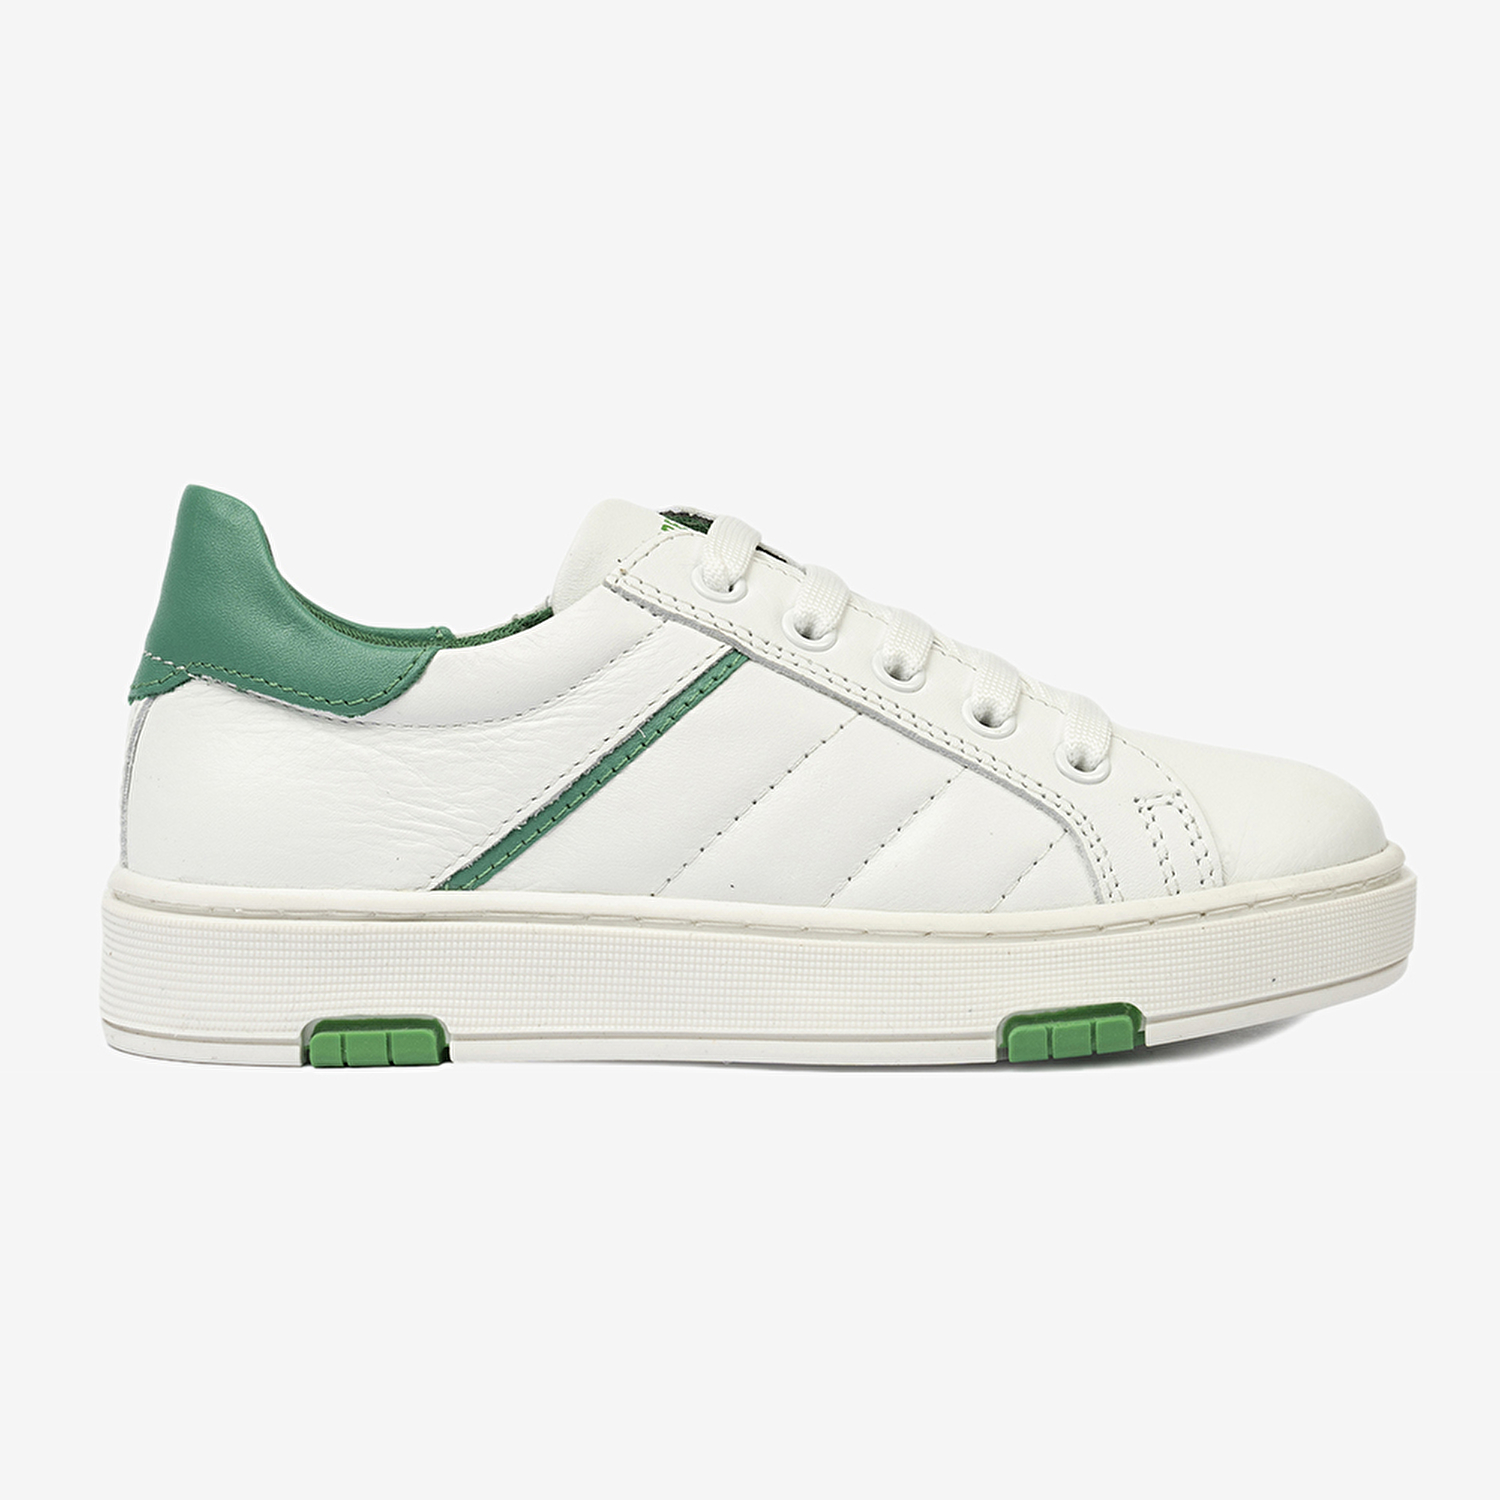 Erkek Çocuk Beyaz Yeşil Hakiki Deri Sneaker Ayakkabı 4Y5NA59501-2